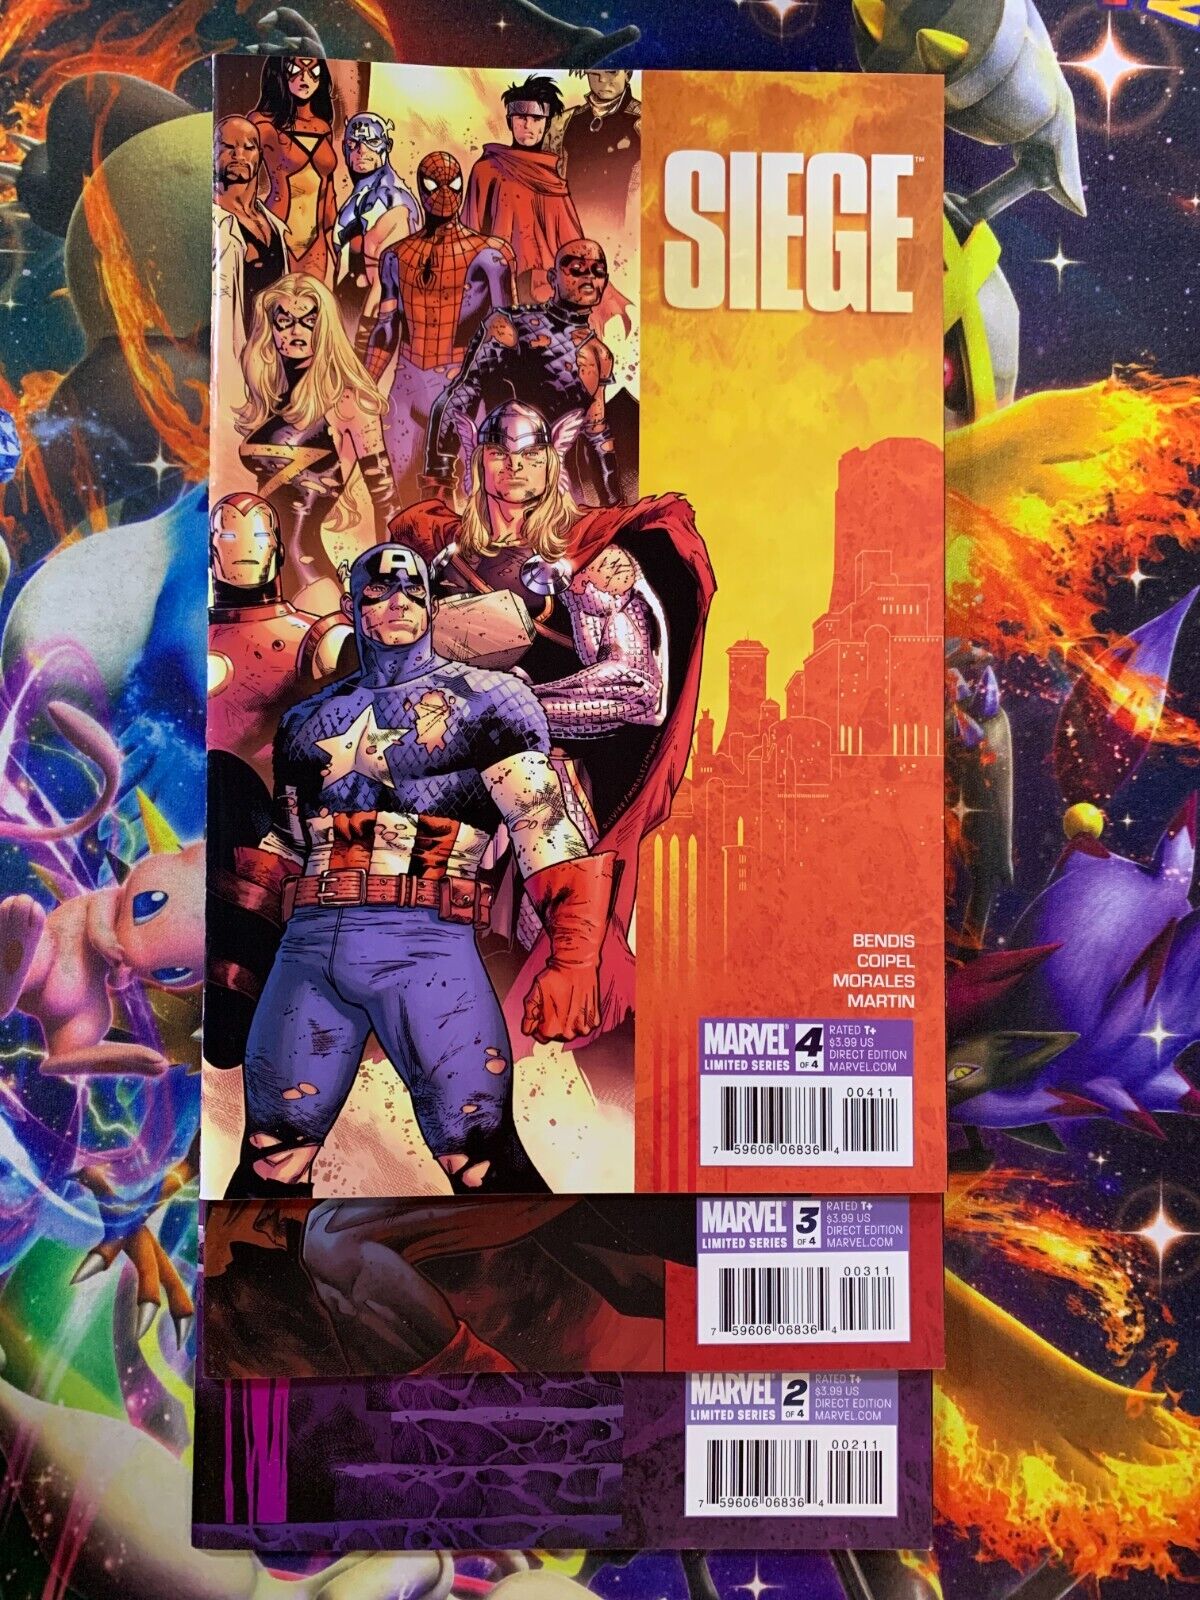 Siege #2 3 4 Marvel Comics 2010 Lot Run 2-4